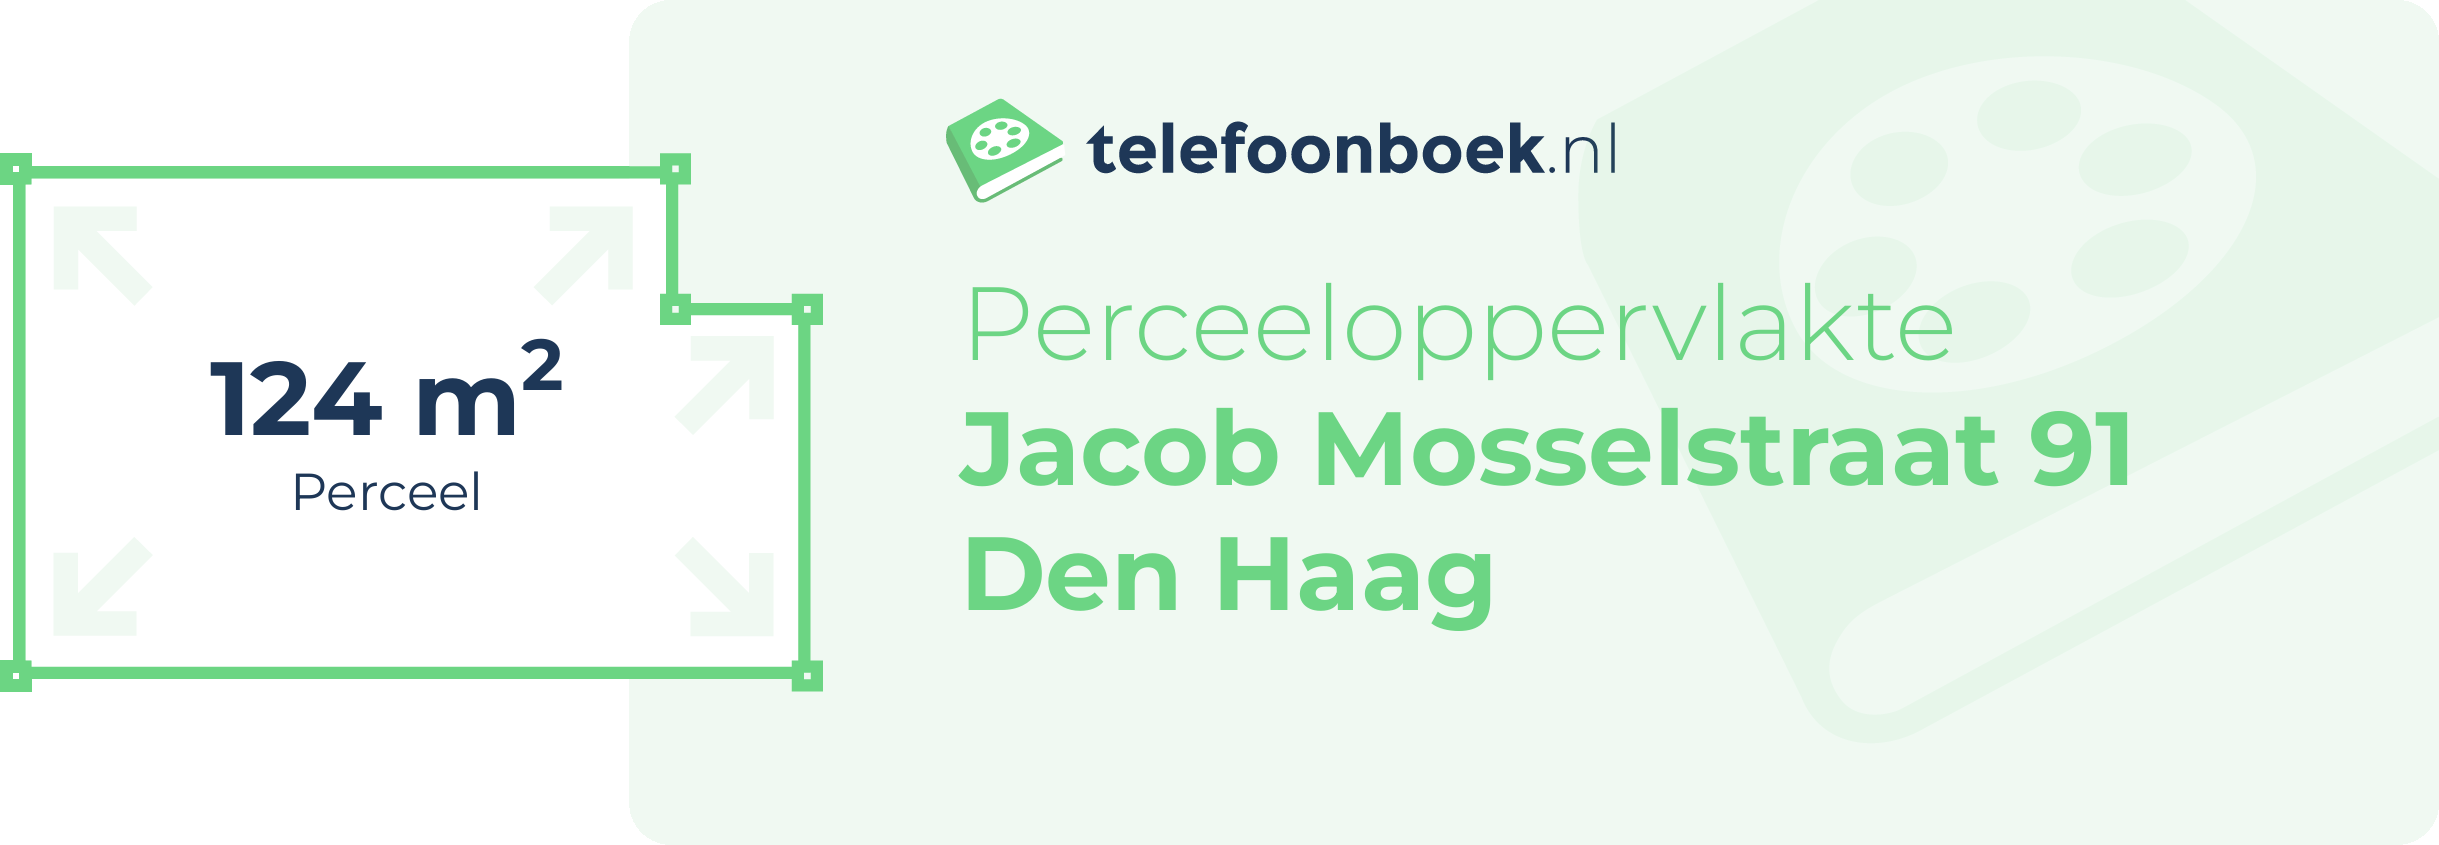 Perceeloppervlakte Jacob Mosselstraat 91 Den Haag